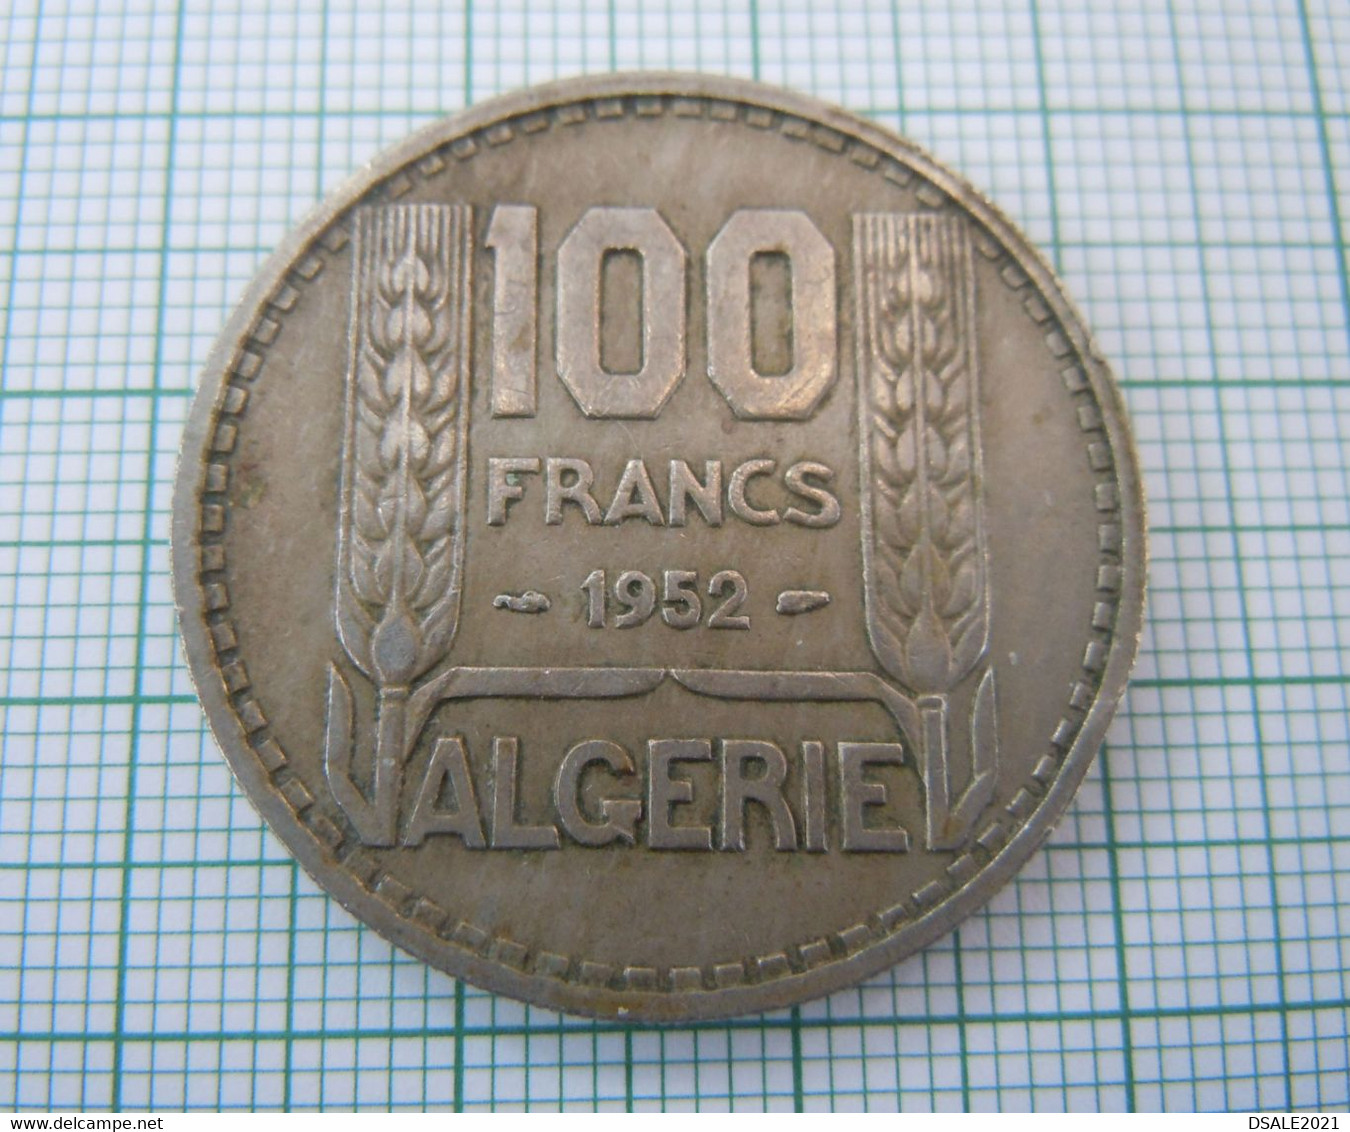 Algeria, Algerie, Monnaie, Coin, 100 Francs 1952, Copper Nickel F (ds686) - Algérie